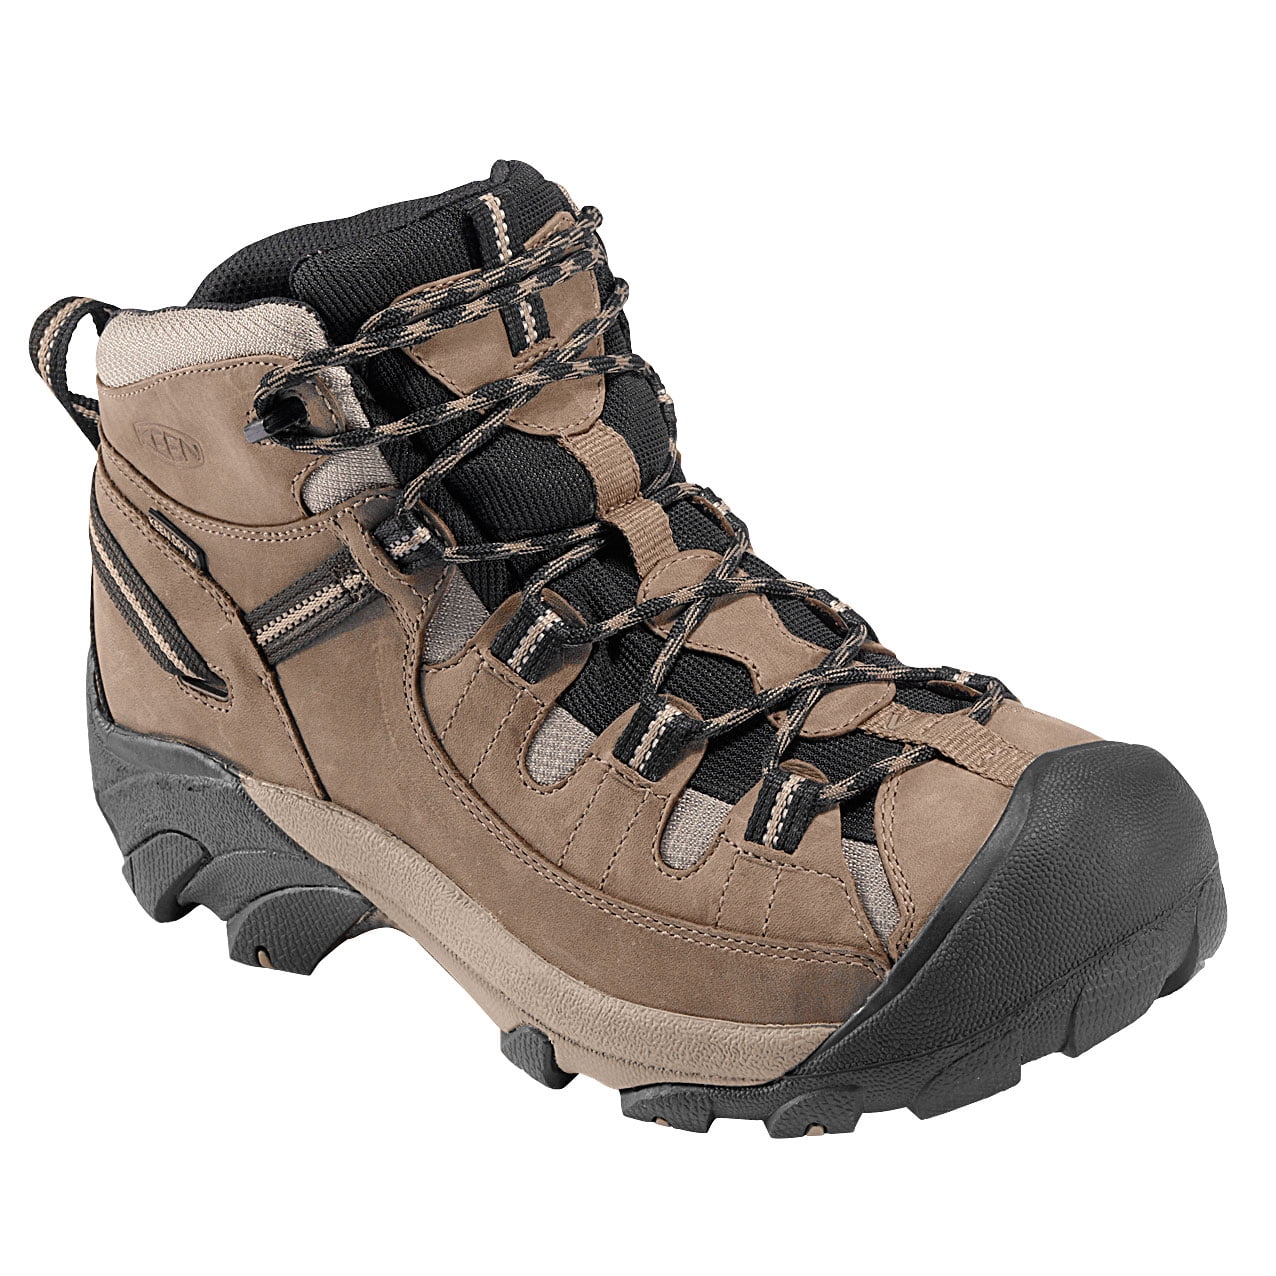 KEEN Outdoor - 1012126 KEEN Men's Targhee II Wide Hiking Boots ...